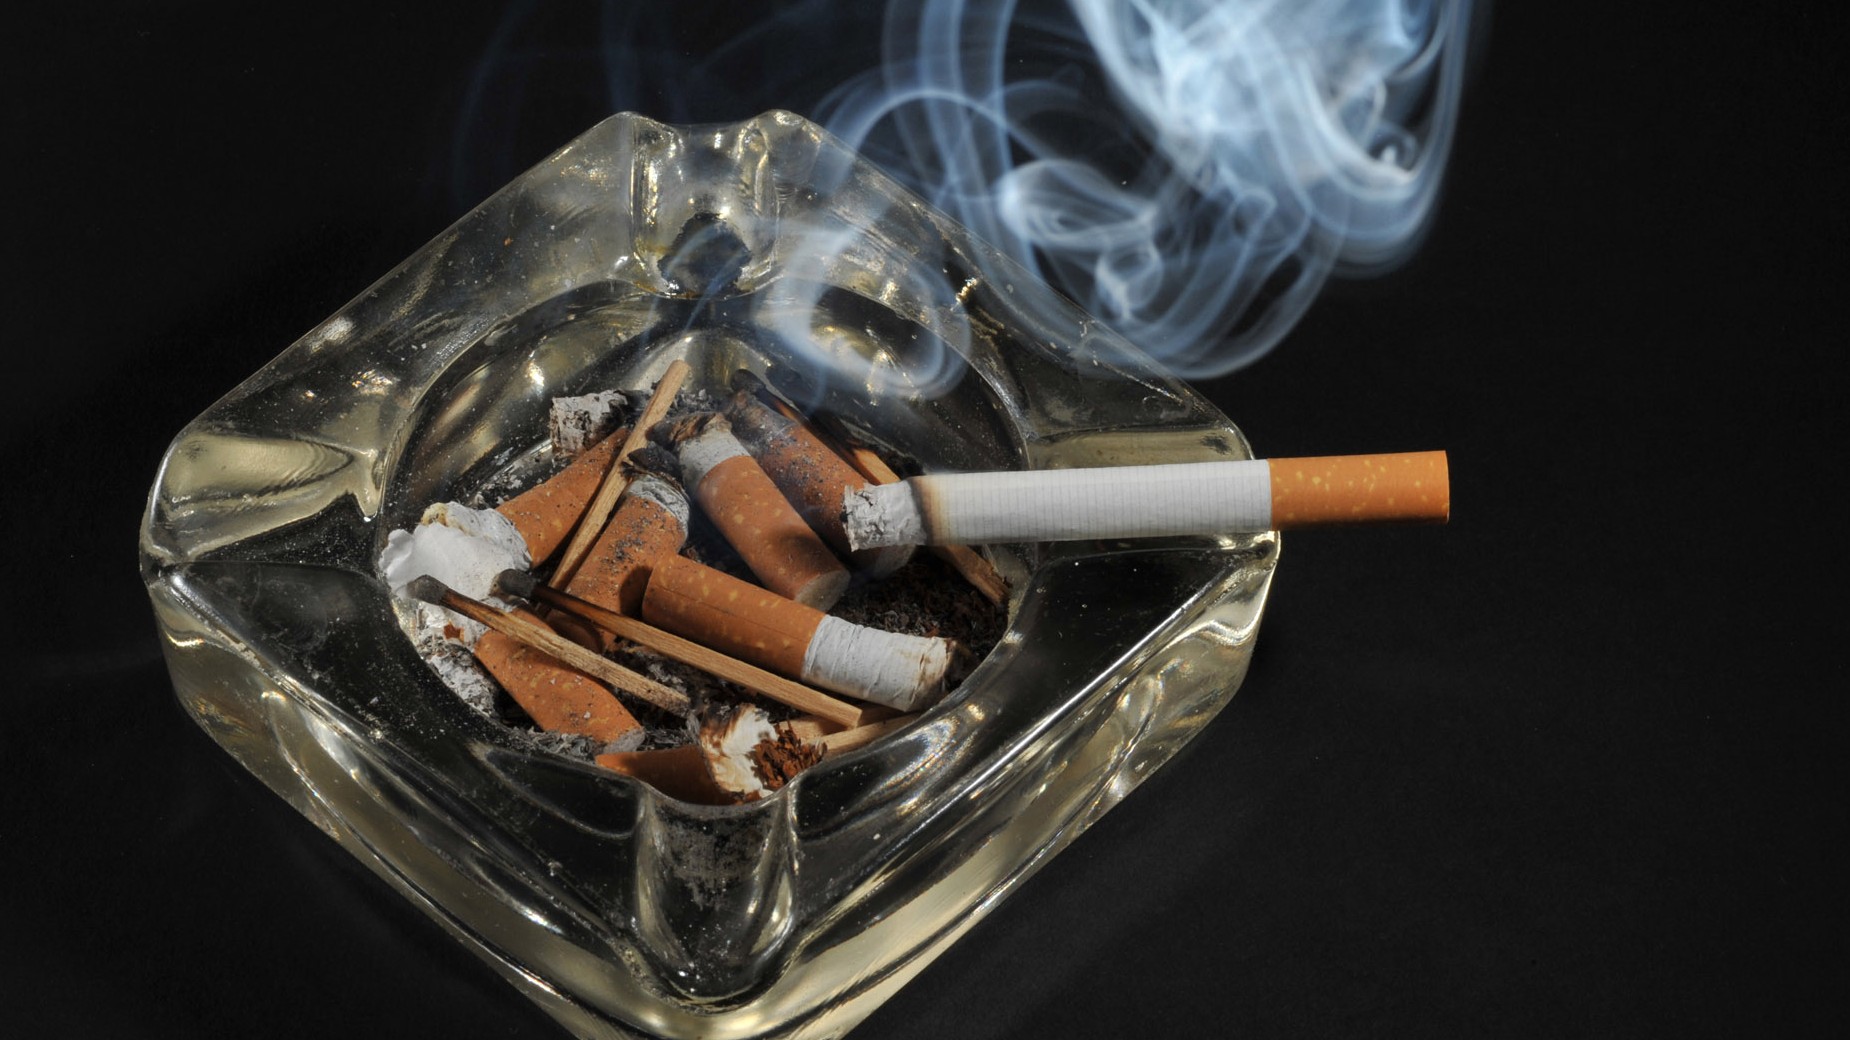 Tabakanbau in der Pfalz - Ein bisschen Gift kann nicht schaden